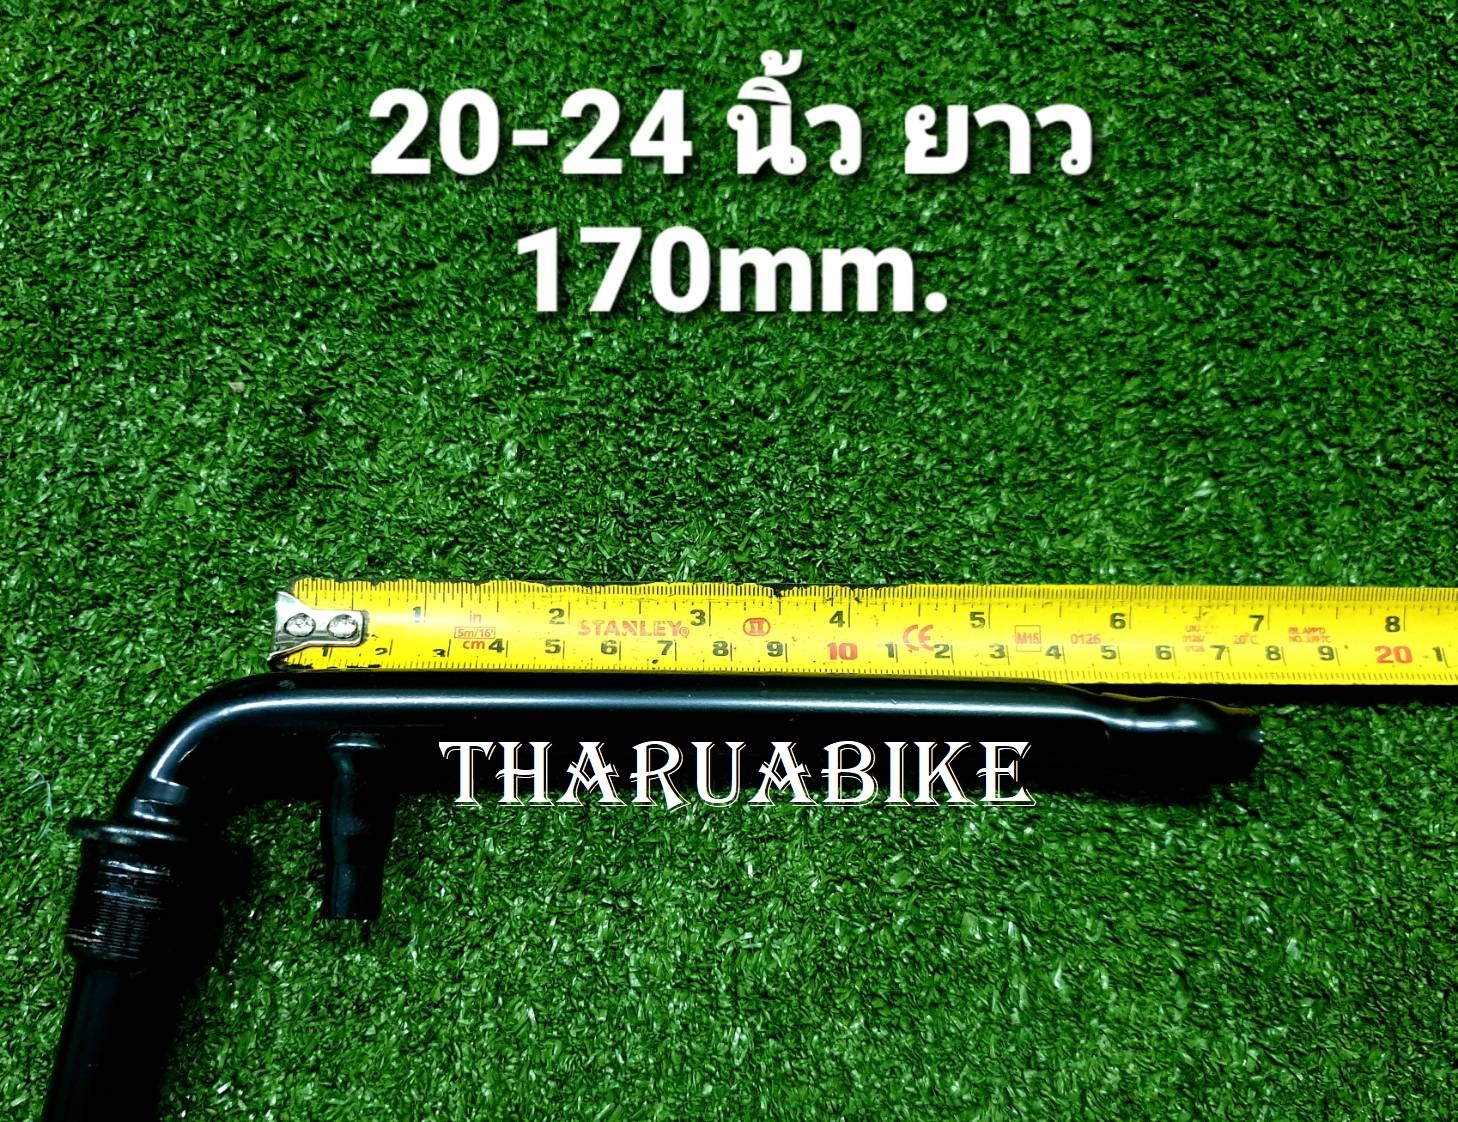 ขาจานเลื้อย สำหรับรถจักรยานขนาด 12 - 24 นิ้ว